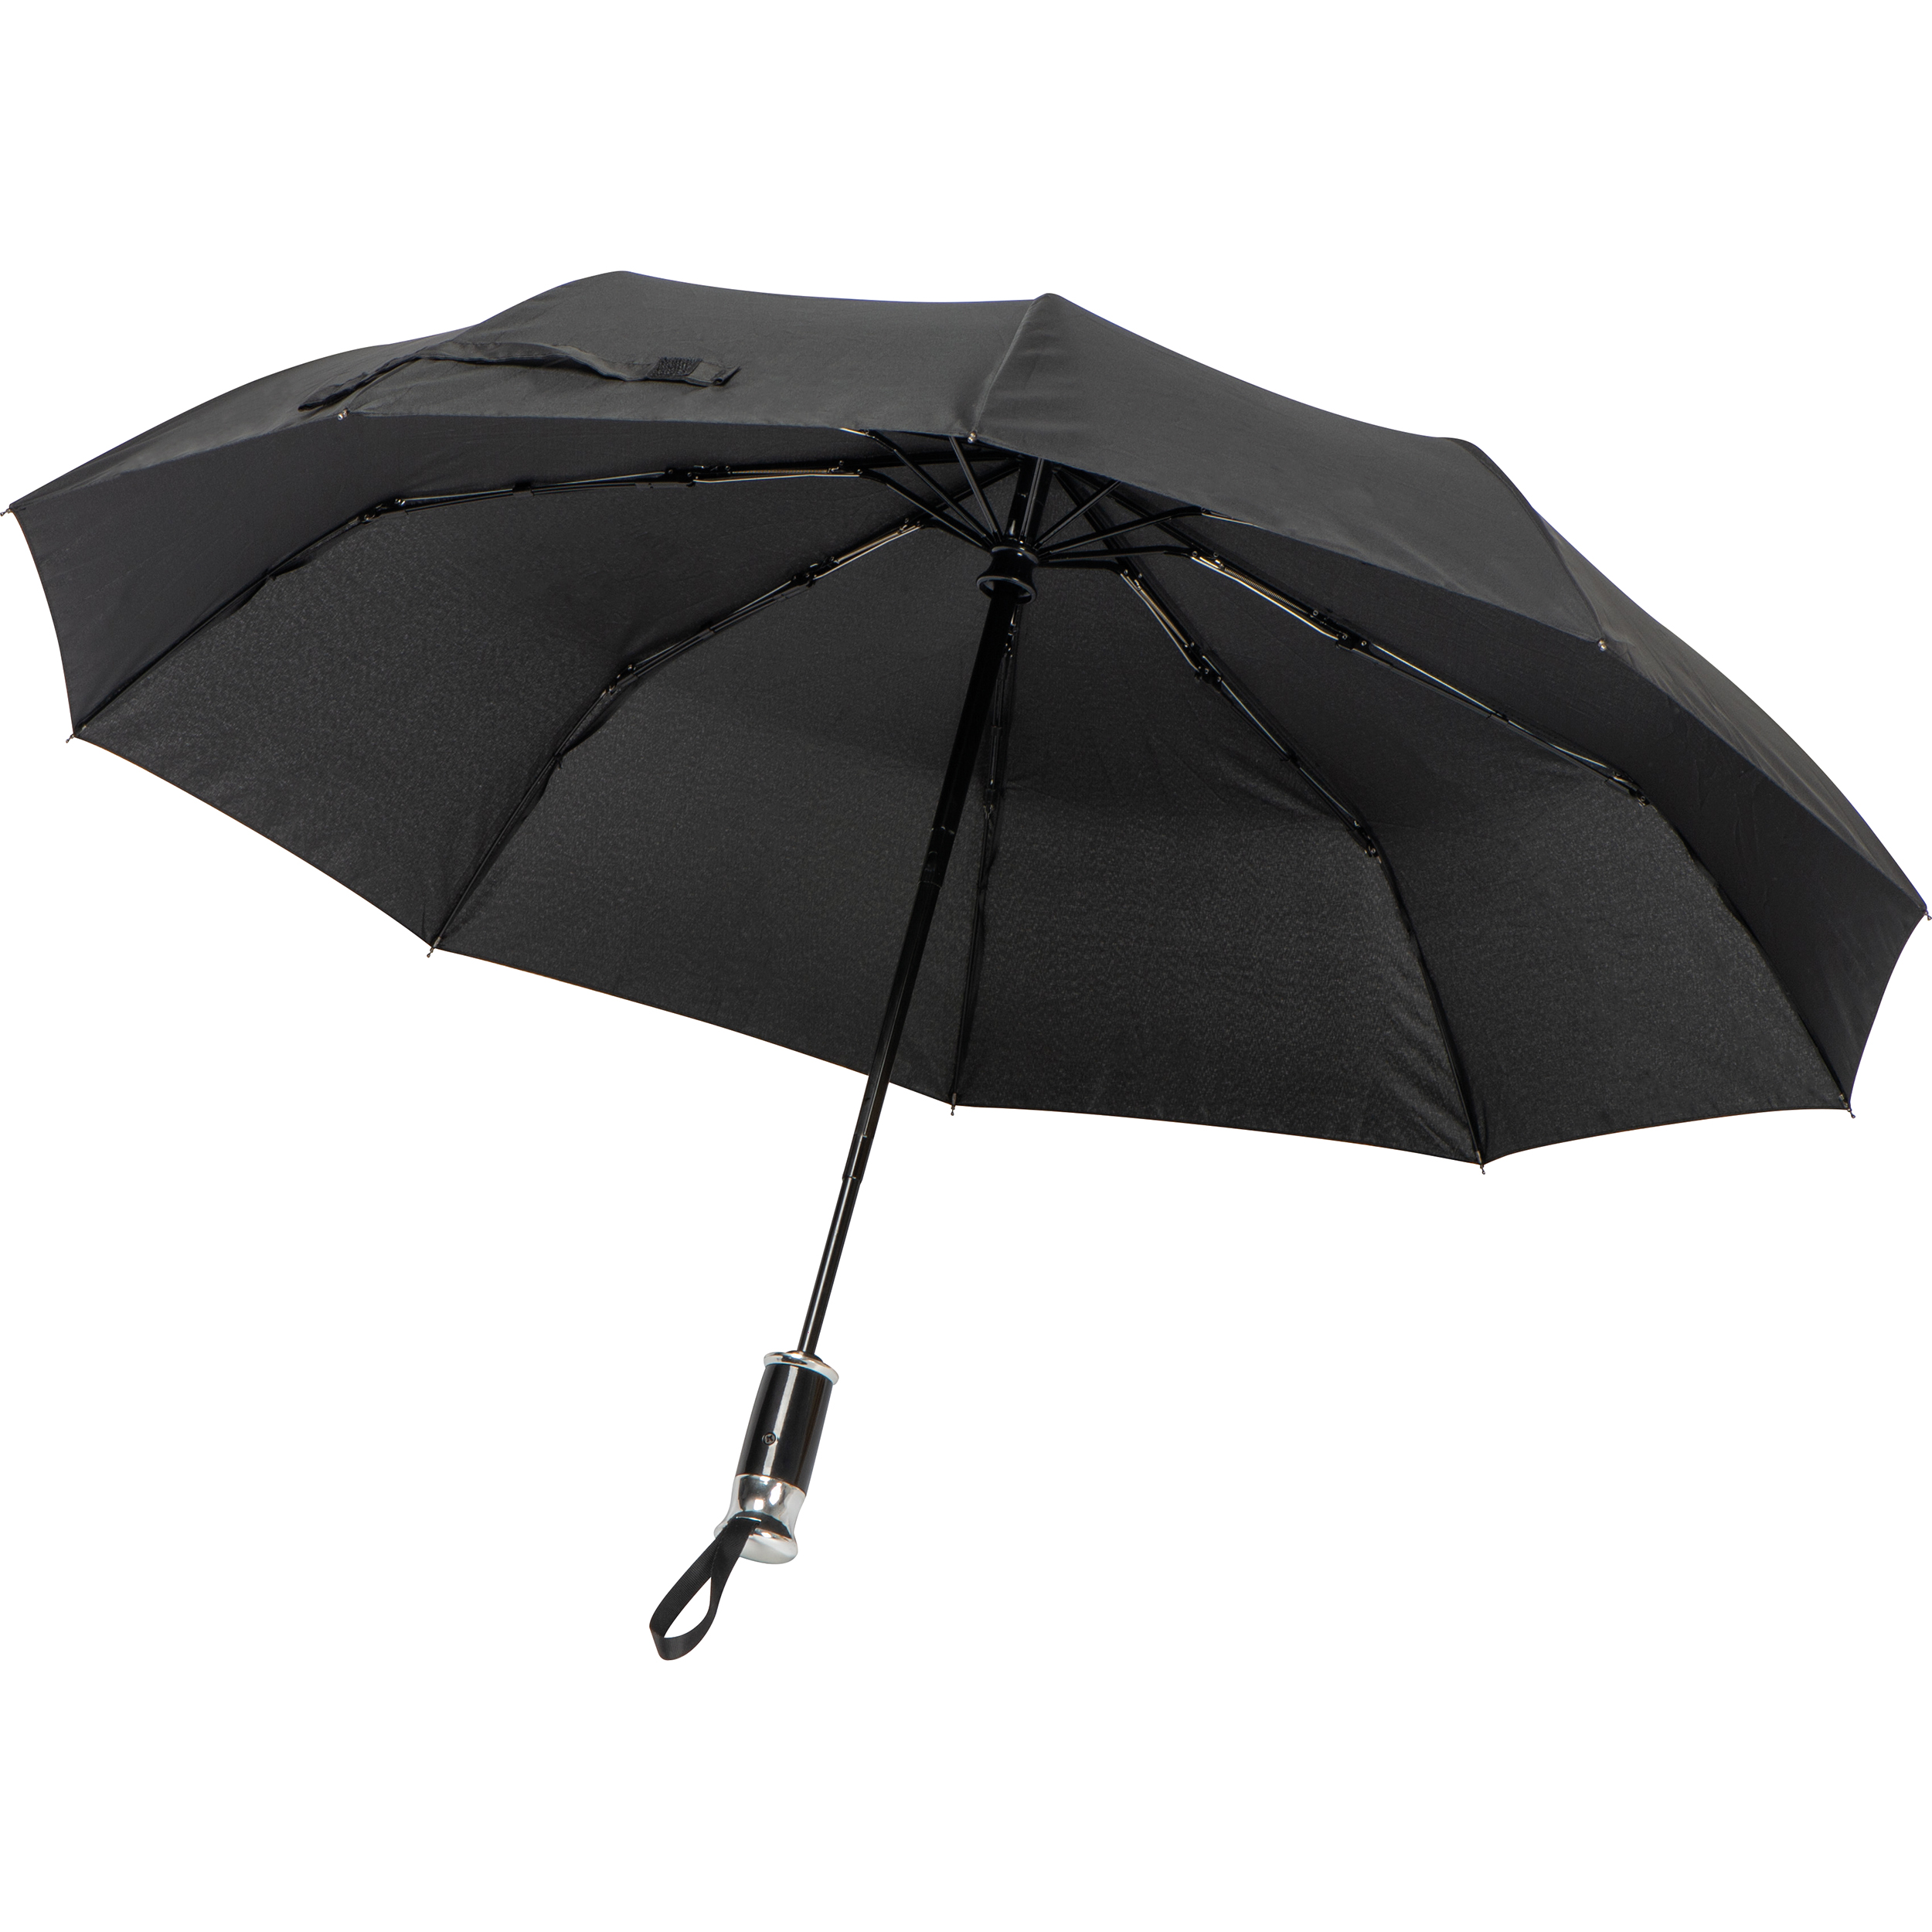 High-quality pocket umbrella